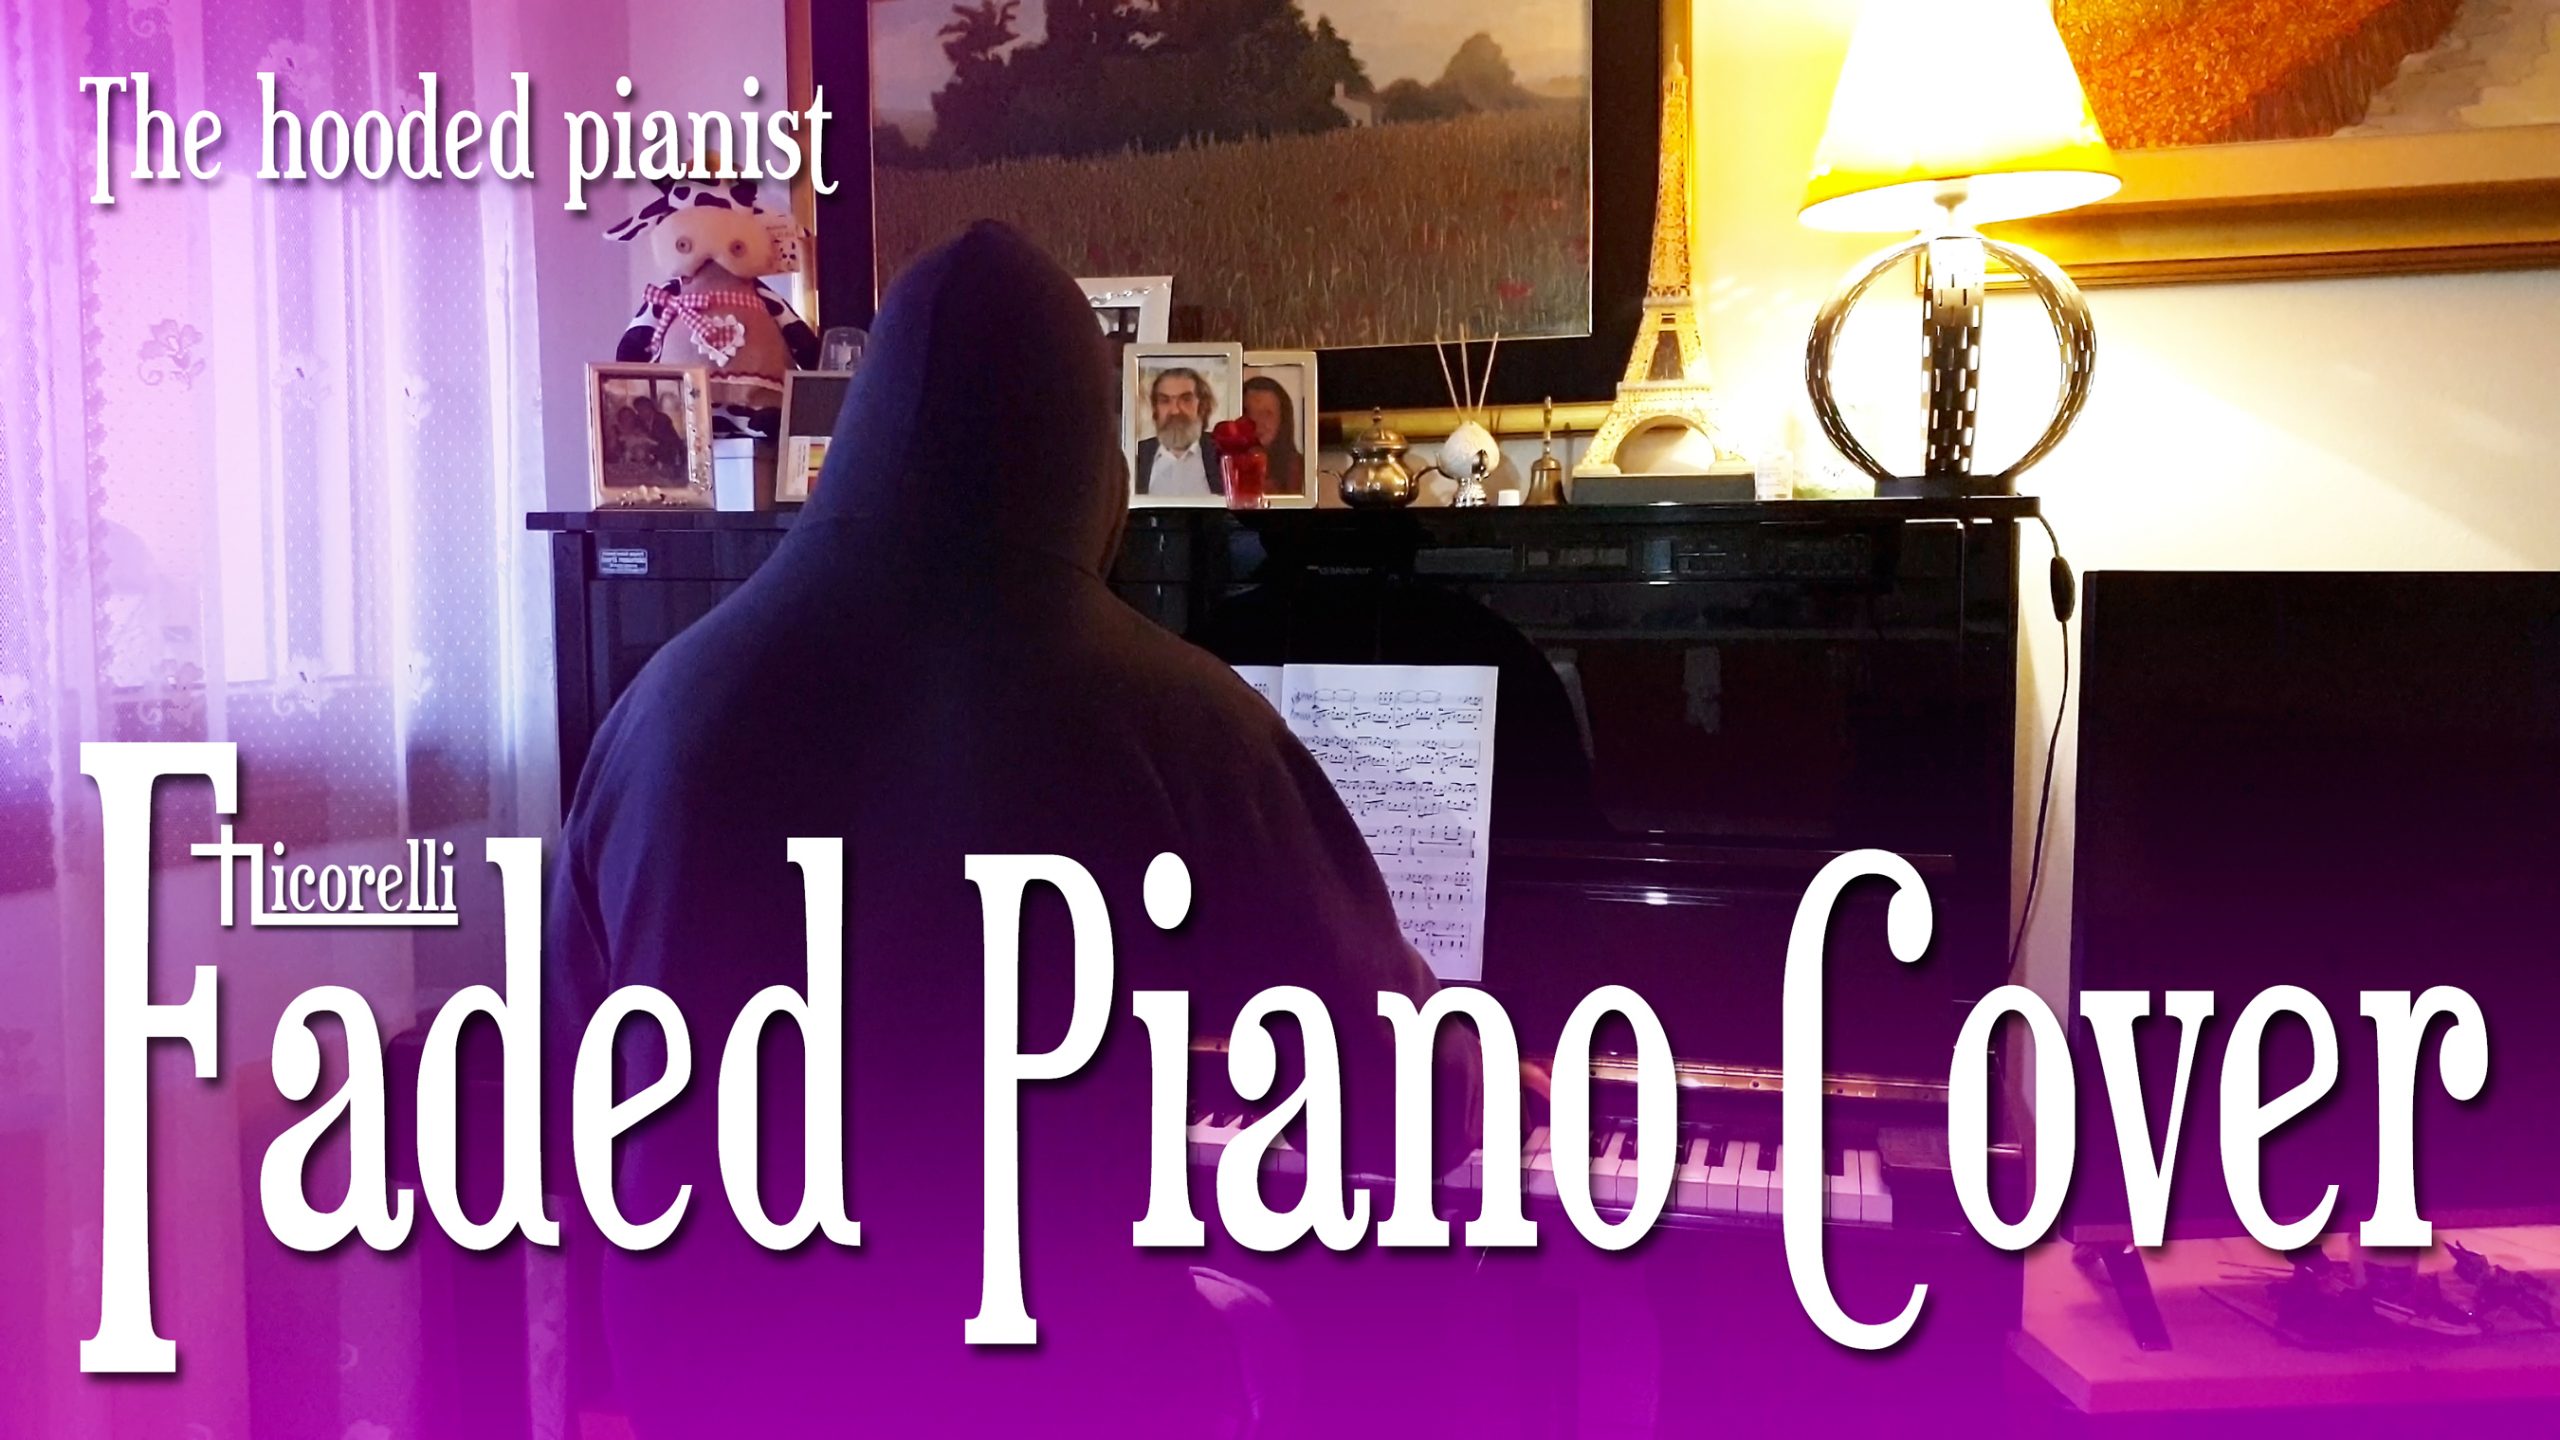 Faded Piano Cover by Mario Jr Nicorelli